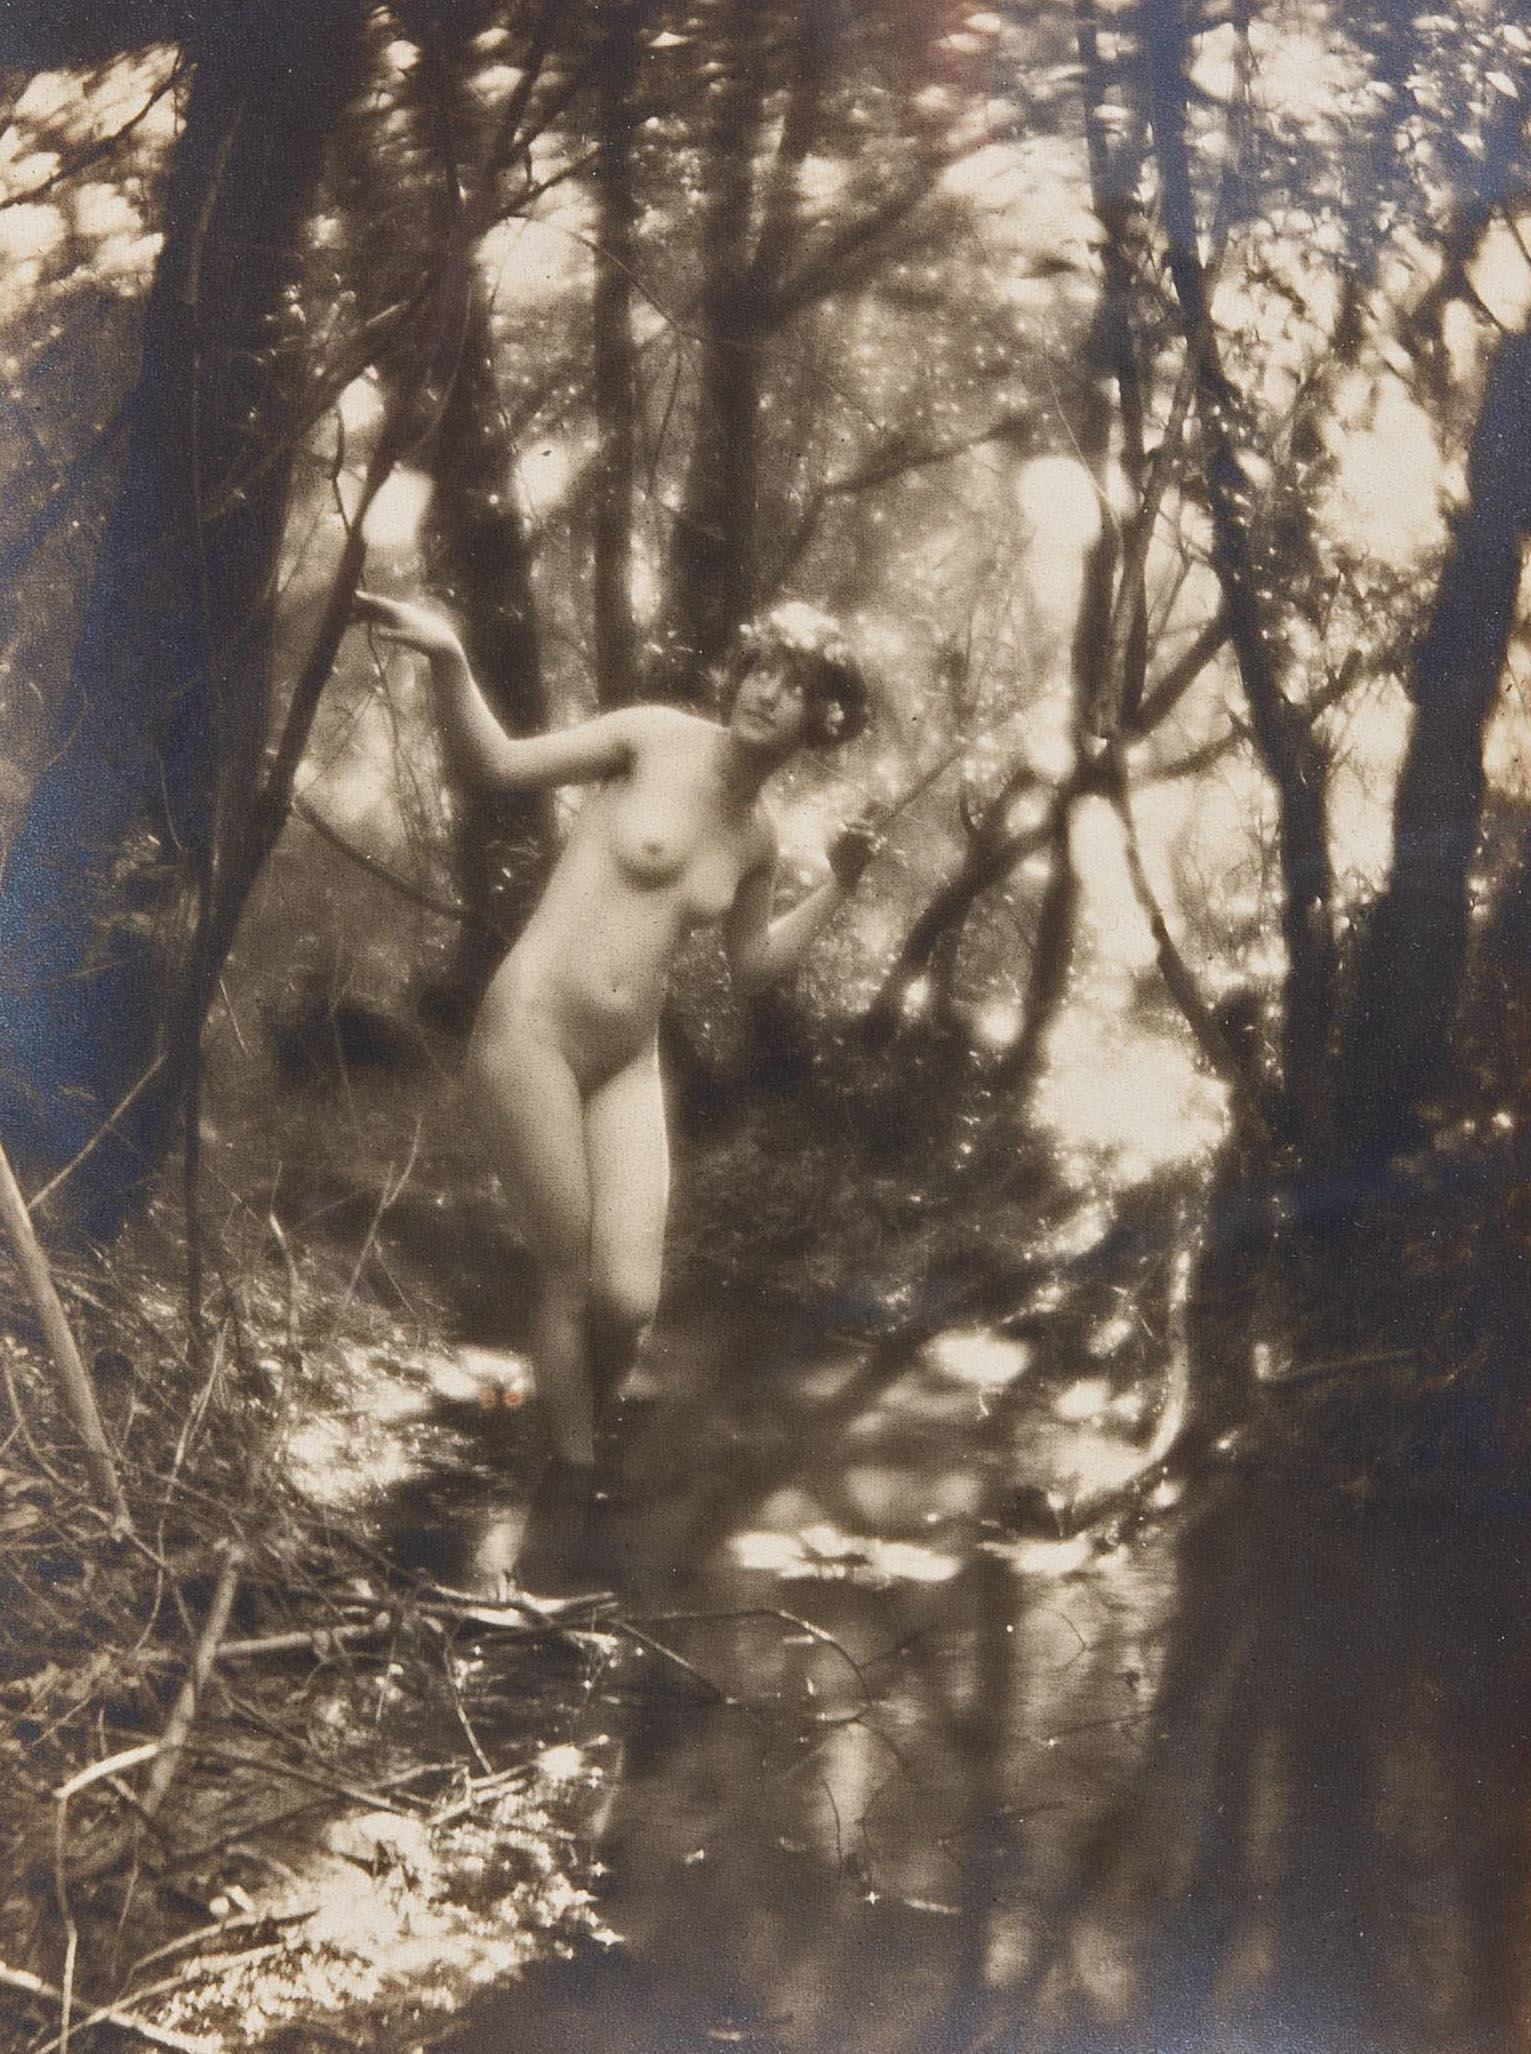 Unknown Nude Photograph – Nudefarbene Nymphe von Charles Cook aus Holz von Charles Cook, um 1910, Viktorianische Fotografie